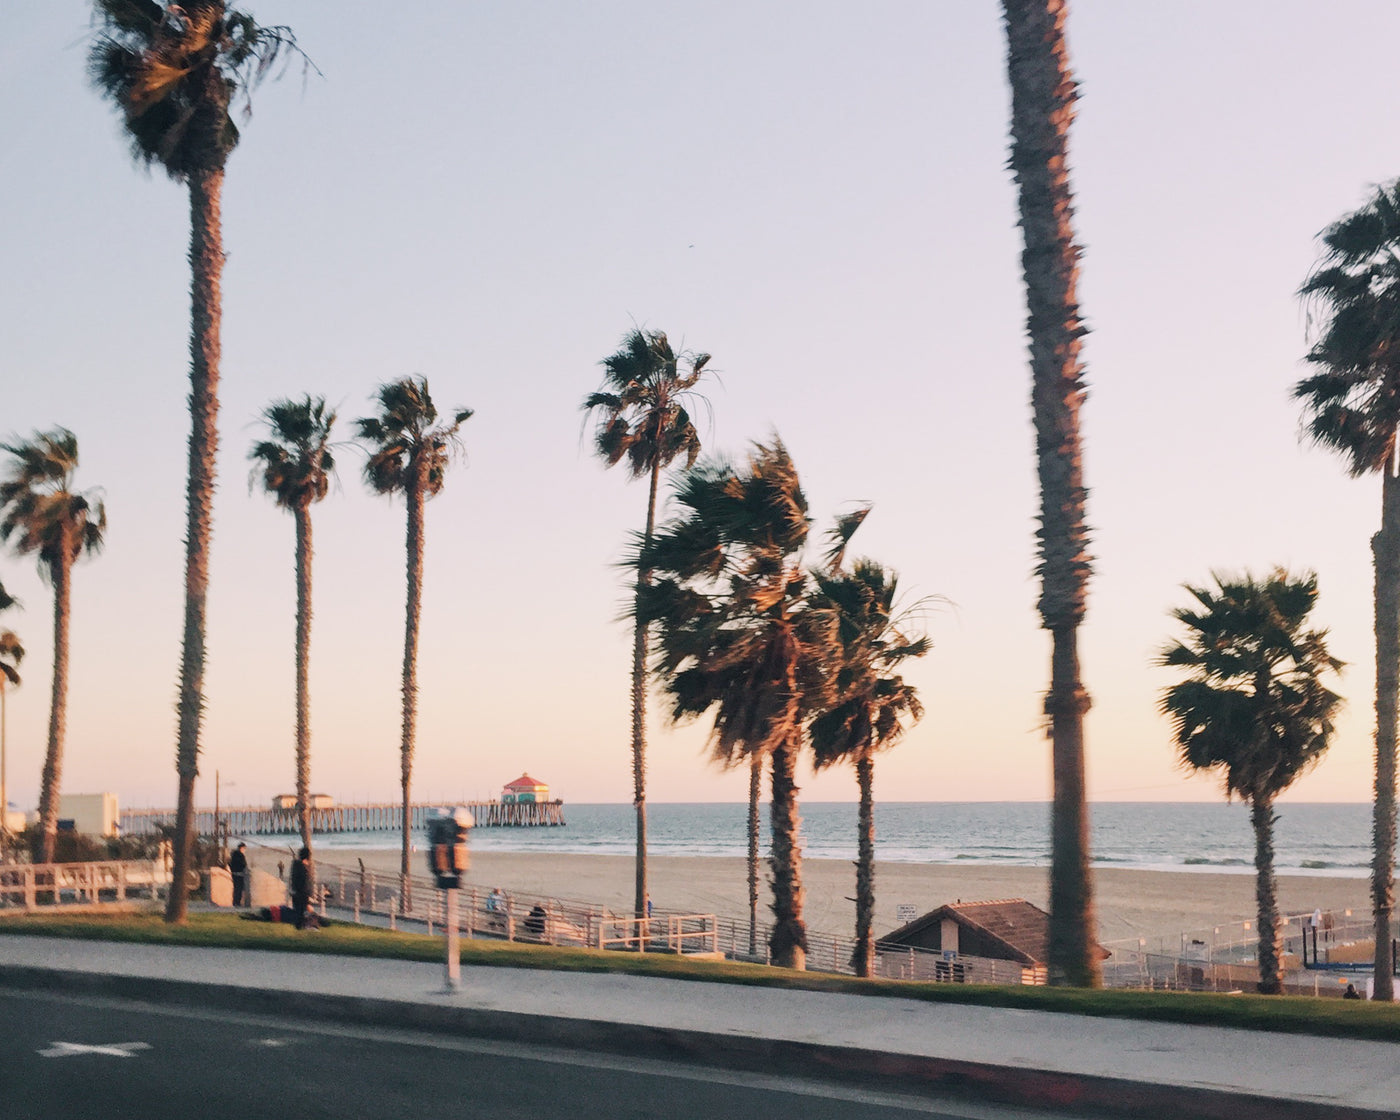 California dreaming…